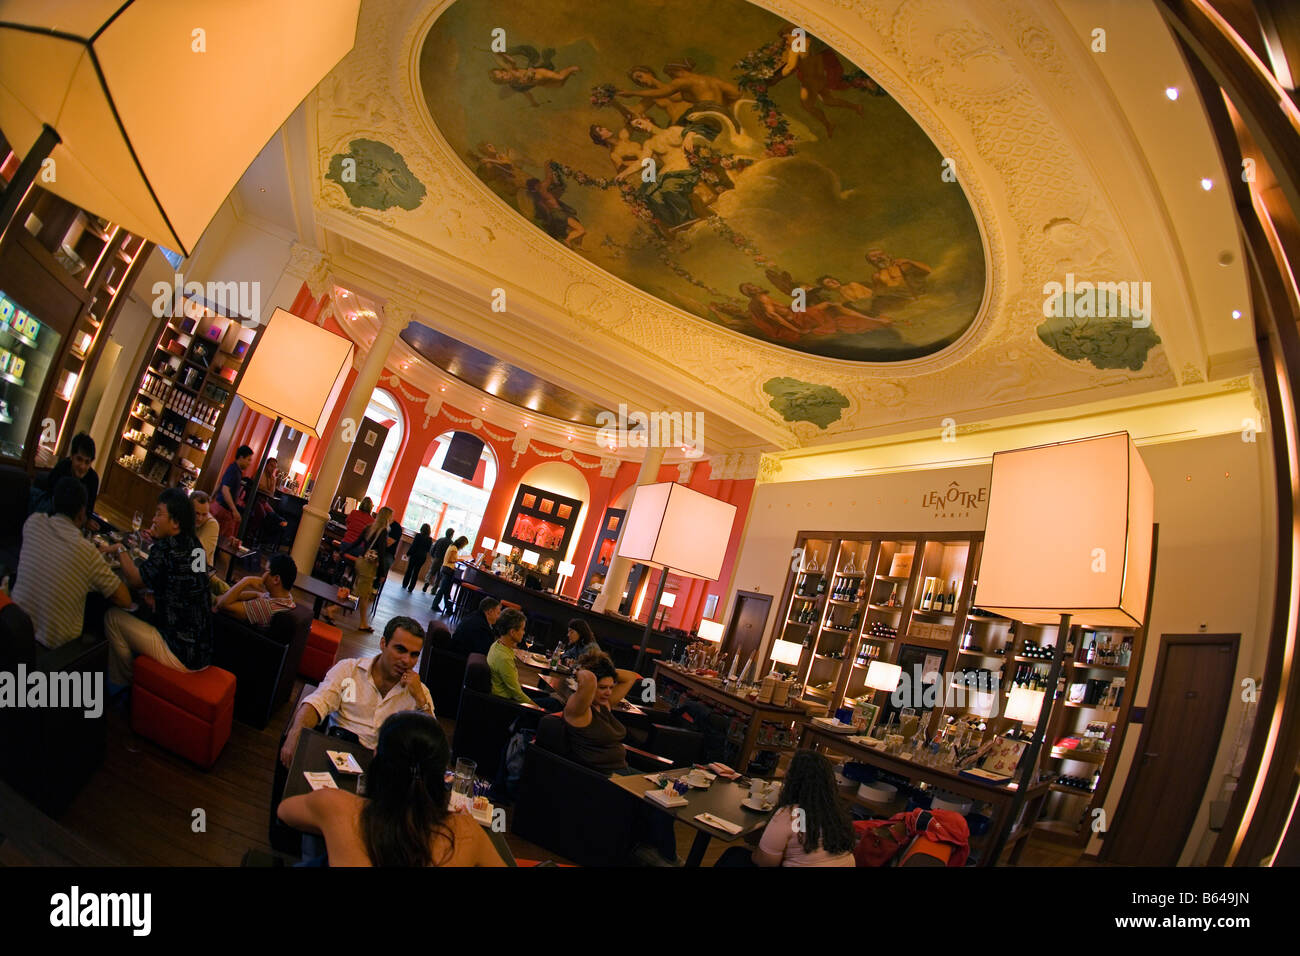 France, Paris, Café, restaurant Le Notre. Stock Photo